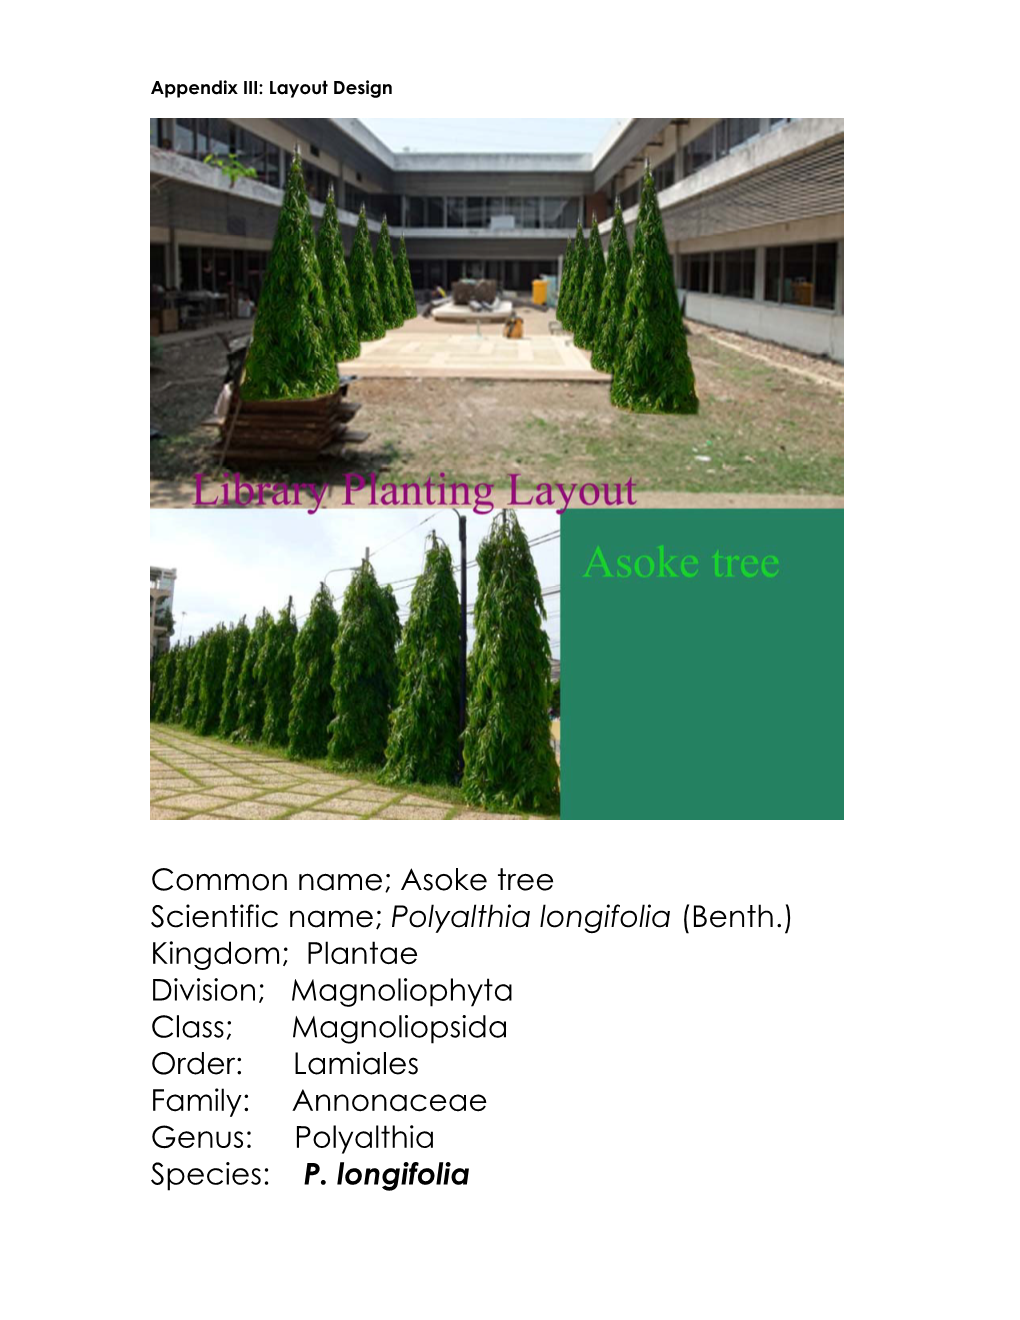 Polyalthia Longifolia (Benth.) Kingdom; Plantae Division; Magnoliophyta Class; Magnoliopsida Order: Lamiales Family: Annonaceae Genus: Polyalthia Species: P